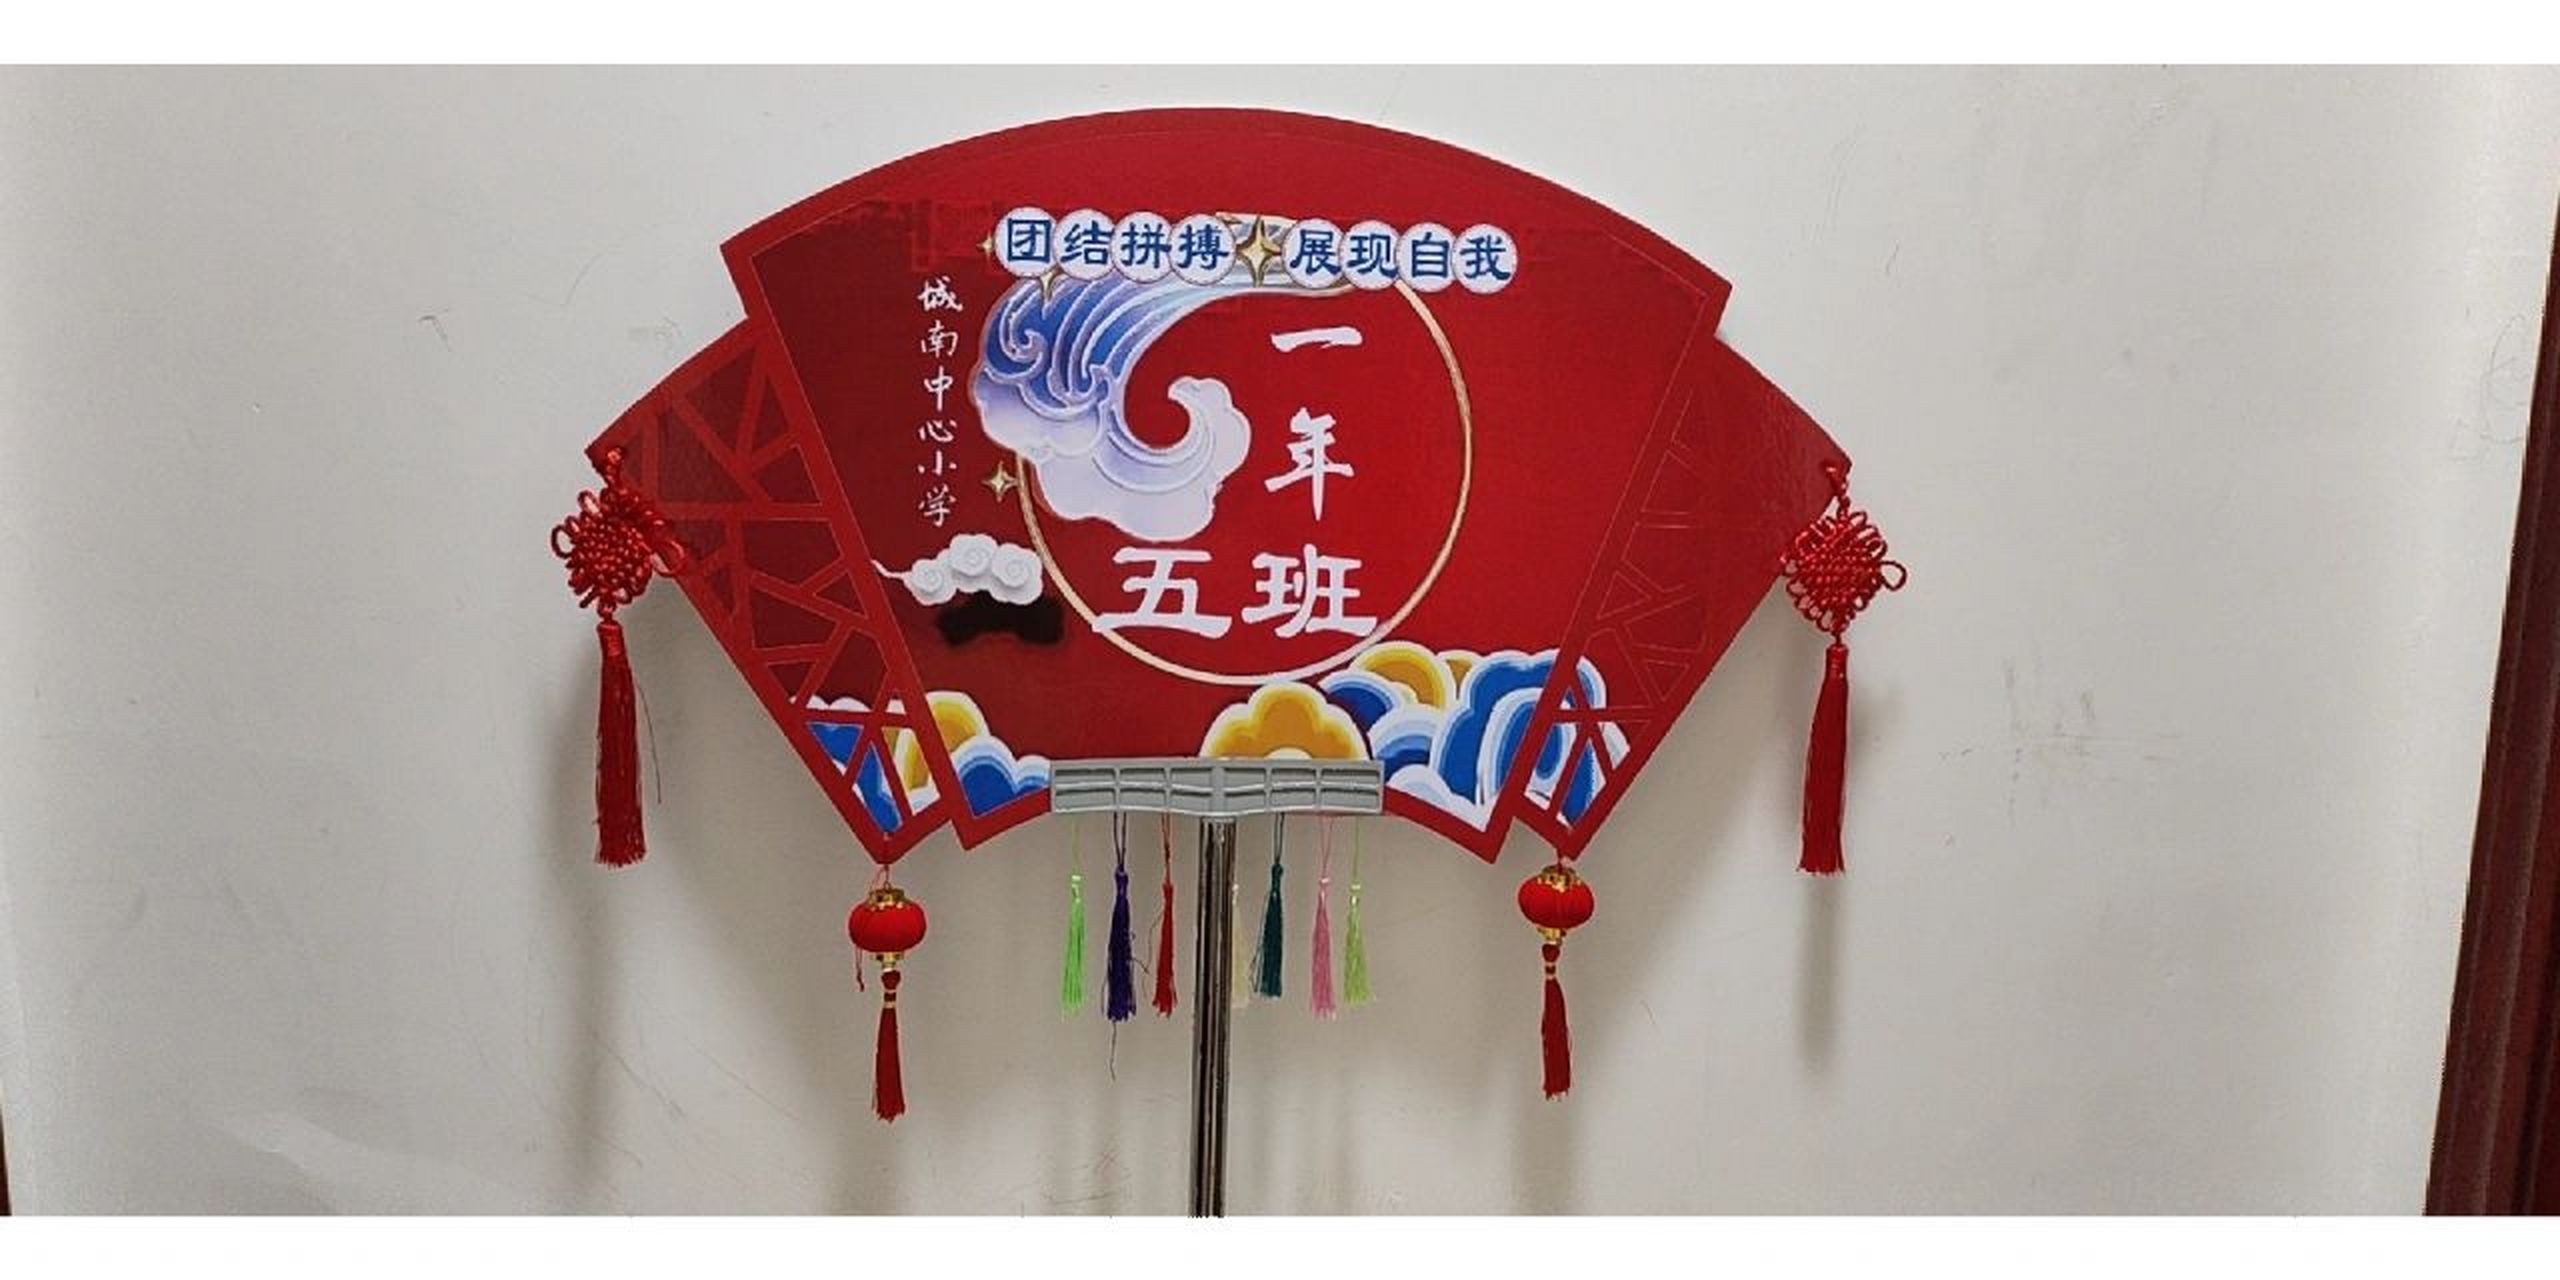 根据开幕式表演的古风舞蹈自己设计的中国风式班牌